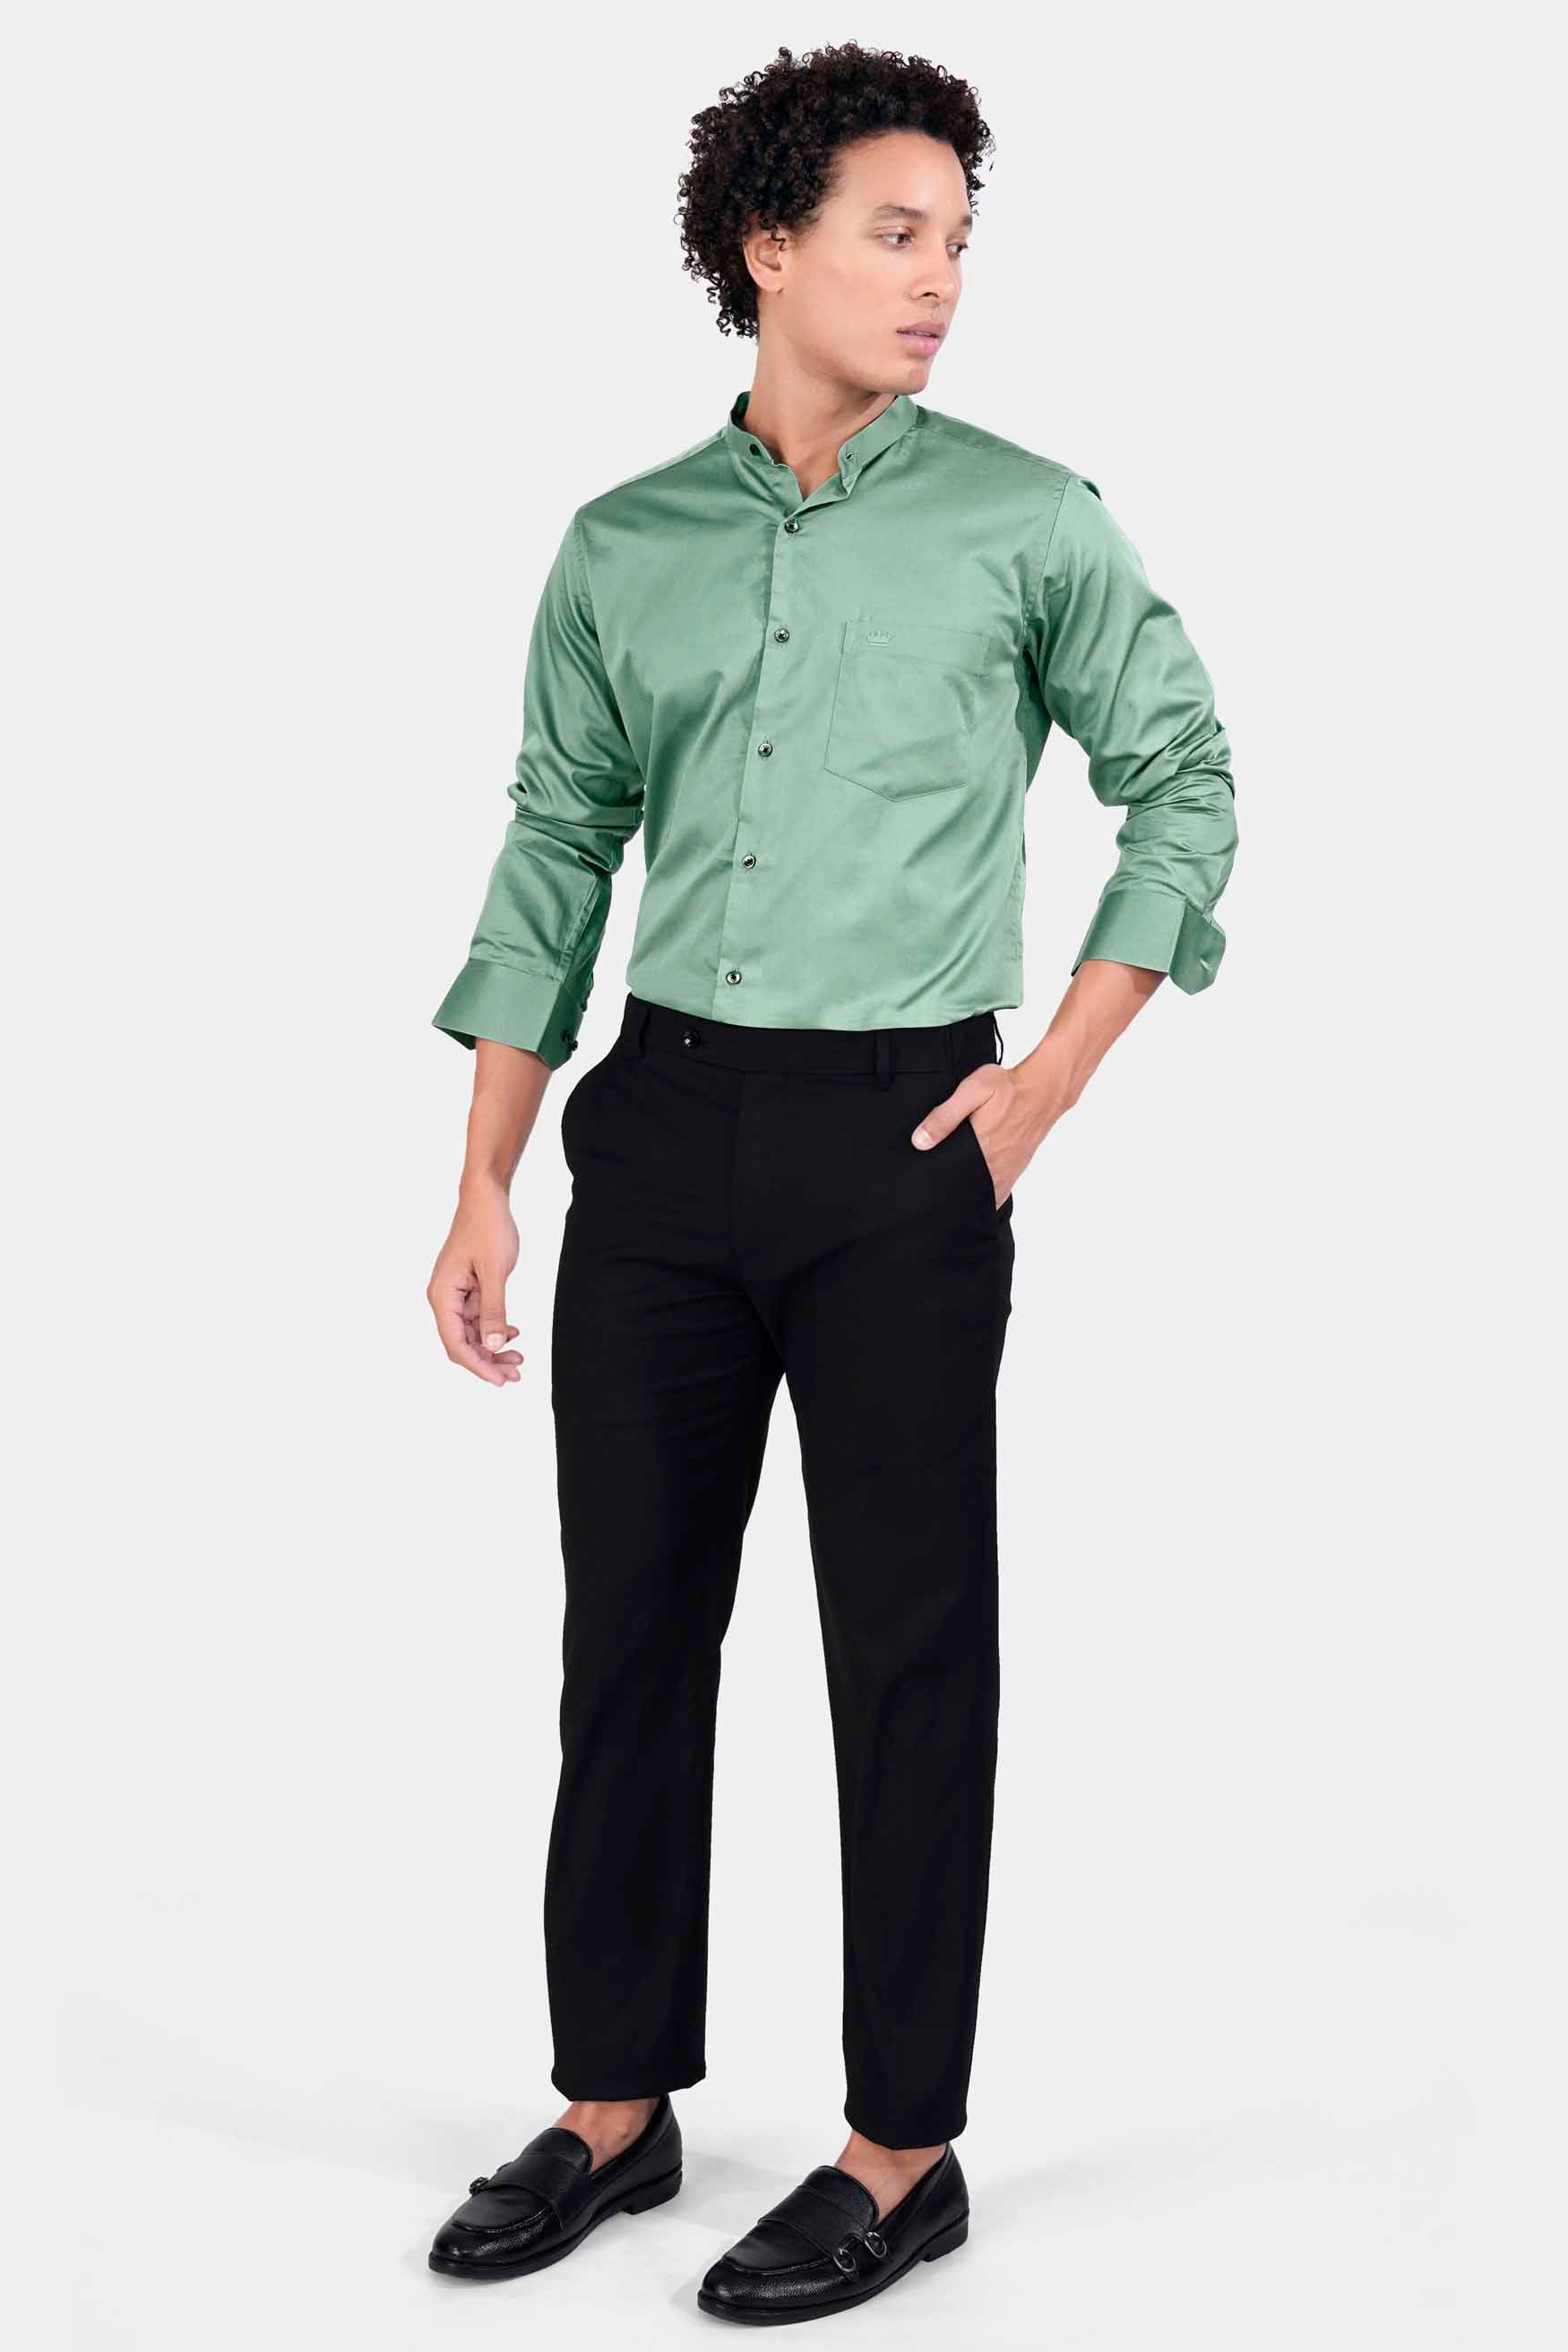 Oxley Green Subtle Sheen Super Soft Premium Cotton Mandarin Shirt